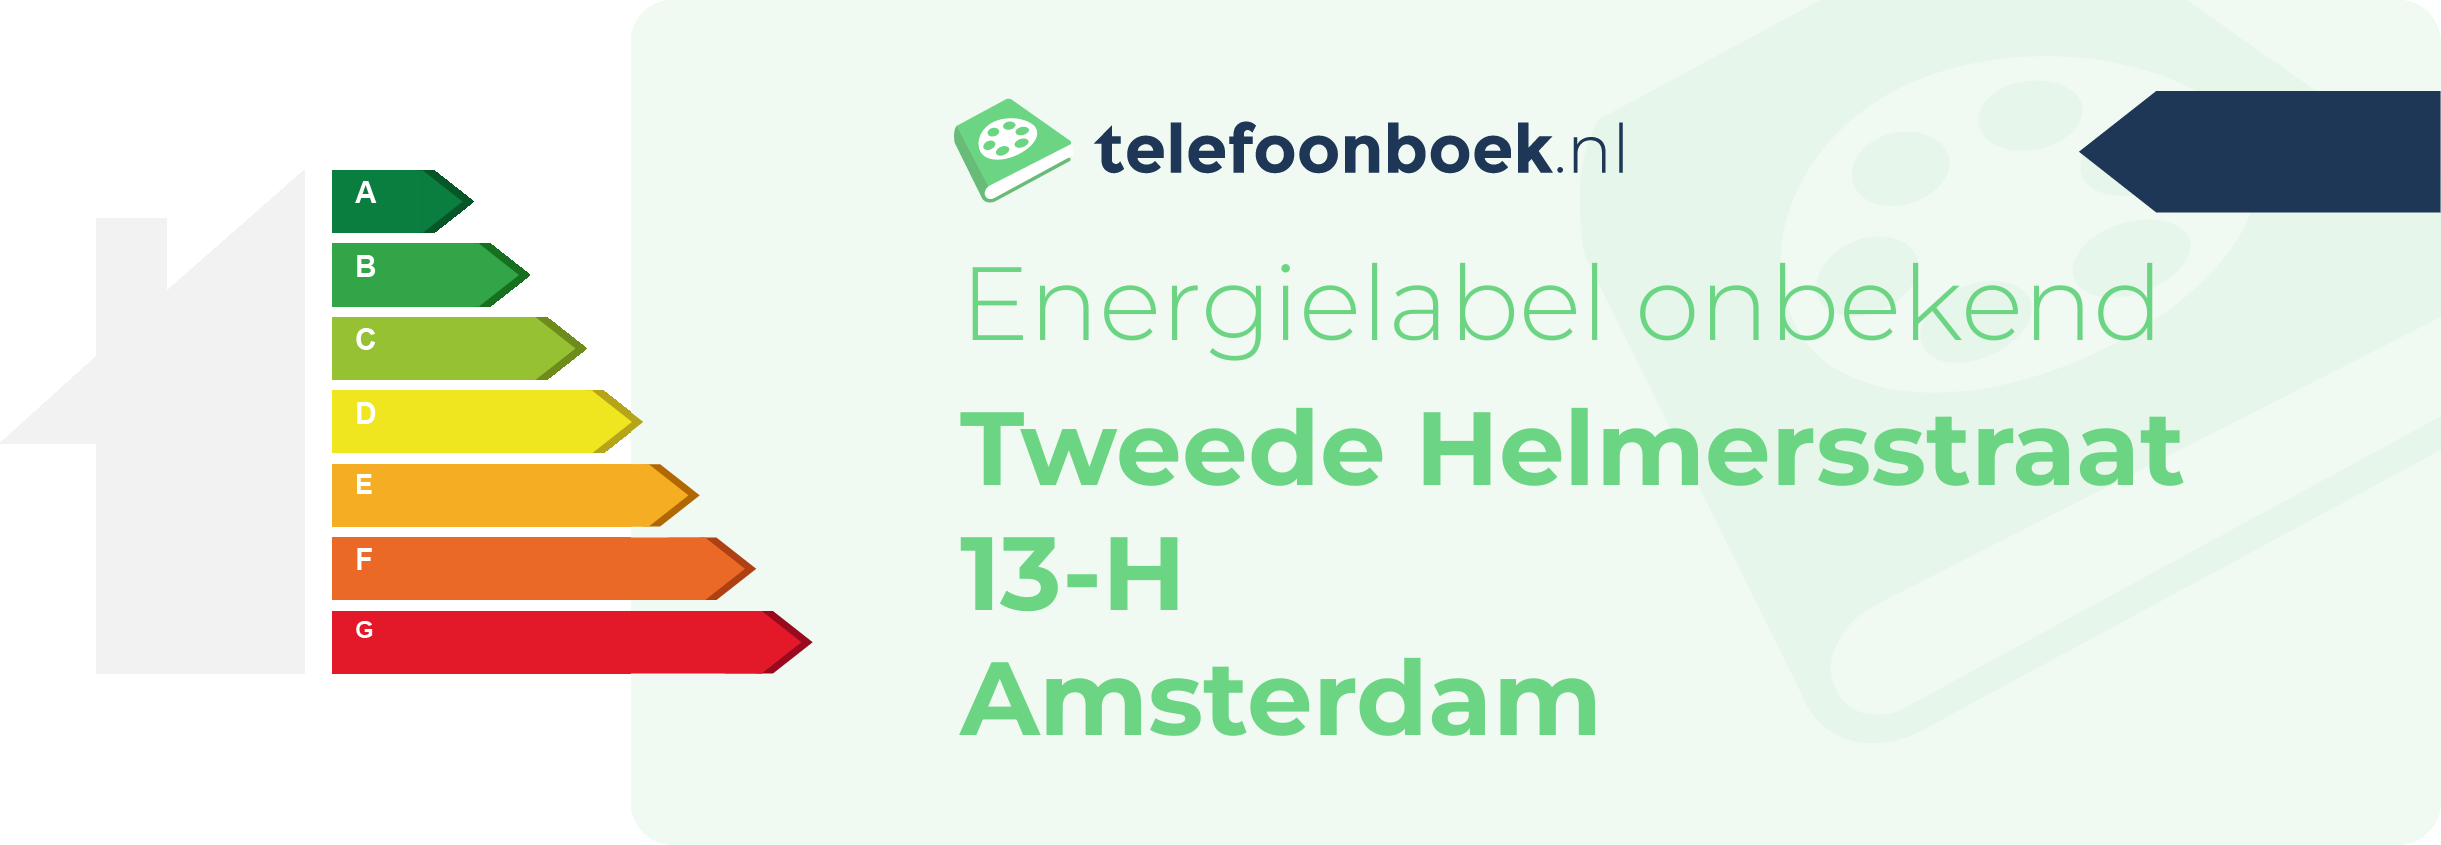 Energielabel Tweede Helmersstraat 13-H Amsterdam